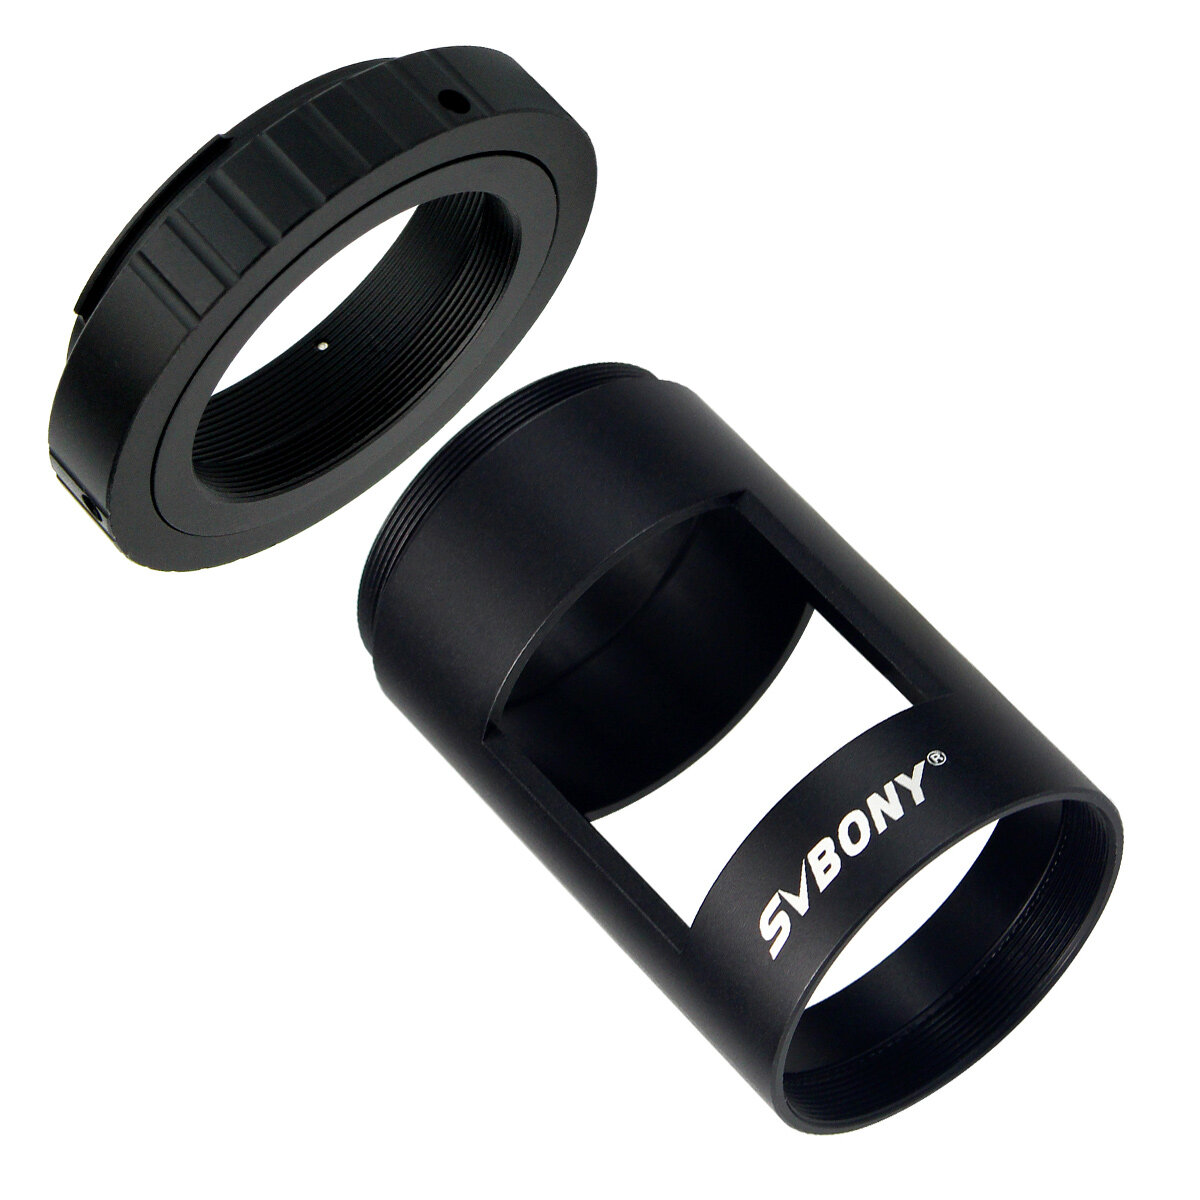 

SVBONY T- ring Camera Lens Adapter for Canon DSLR/SLR Photography Sleeve M42 Thread for Landscape Lens Spotting Scope